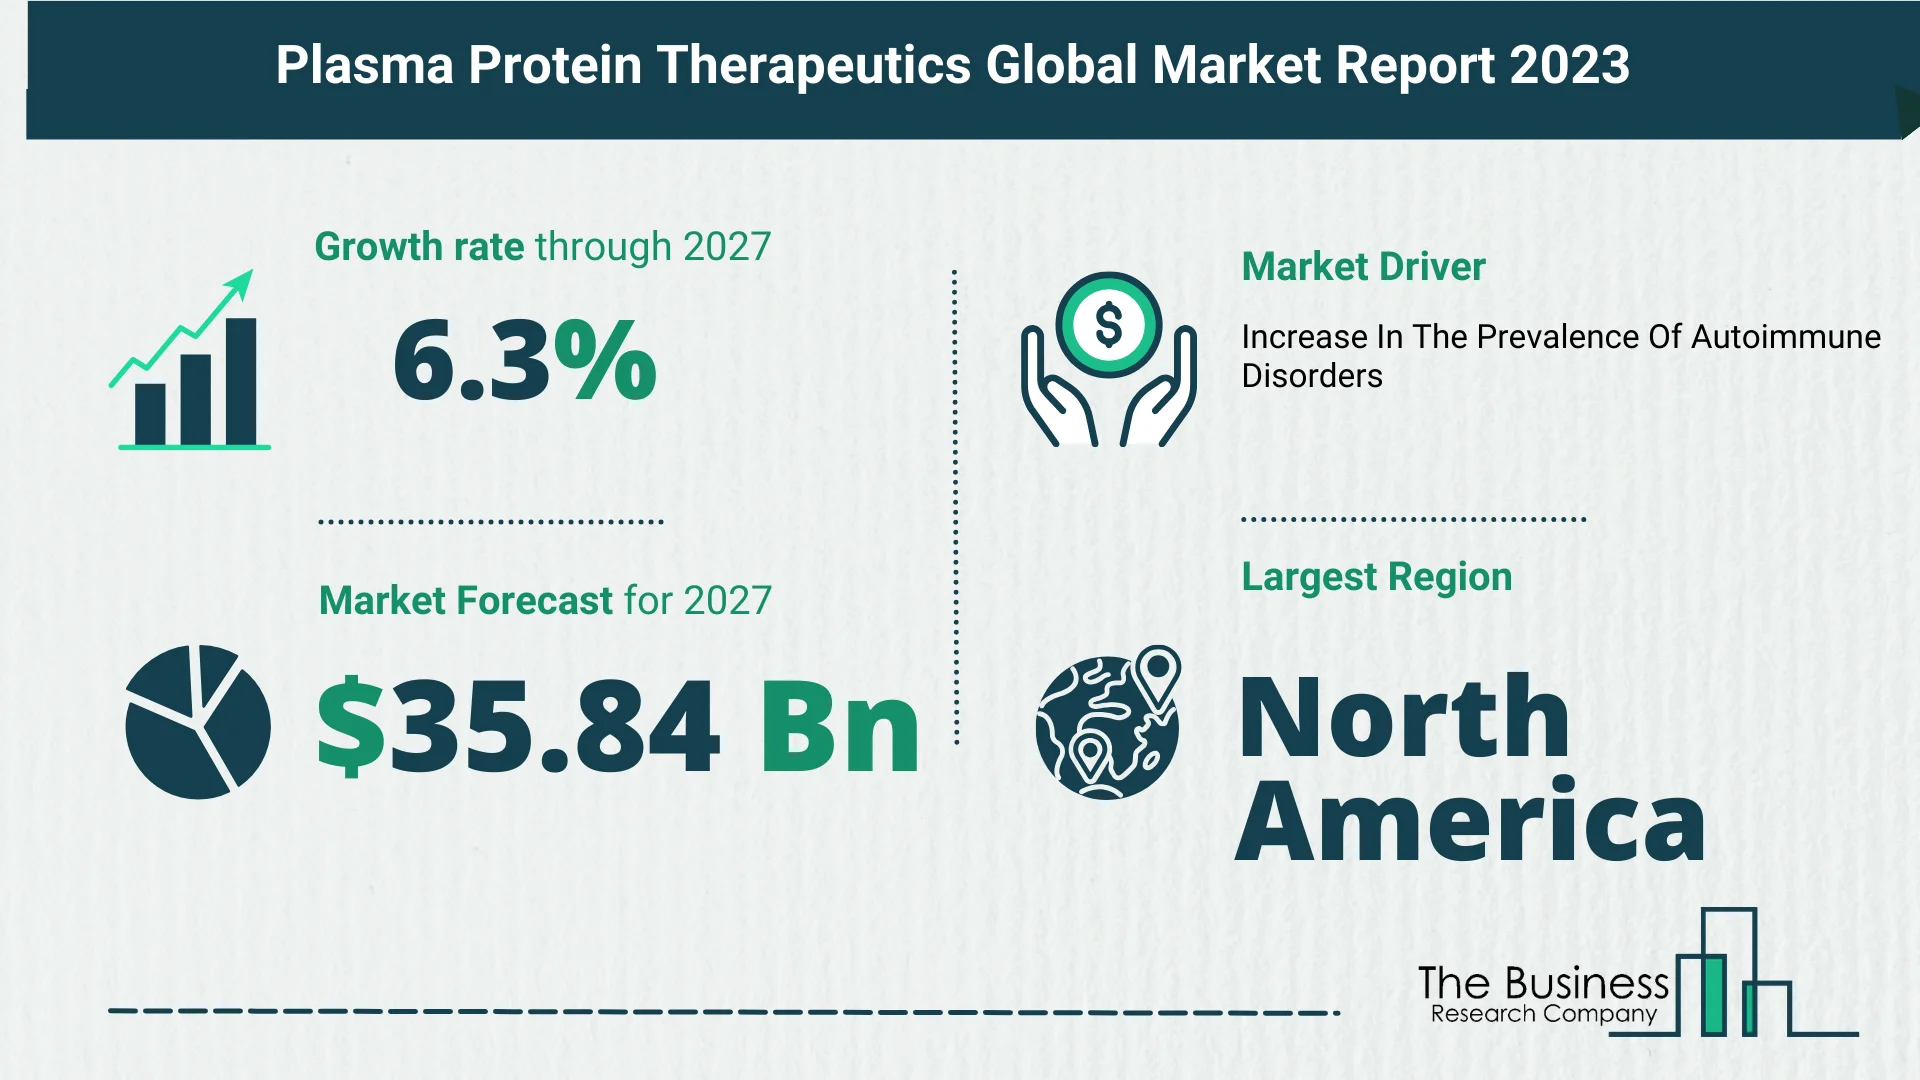 Global Plasma Protein Therapeutics Market Size